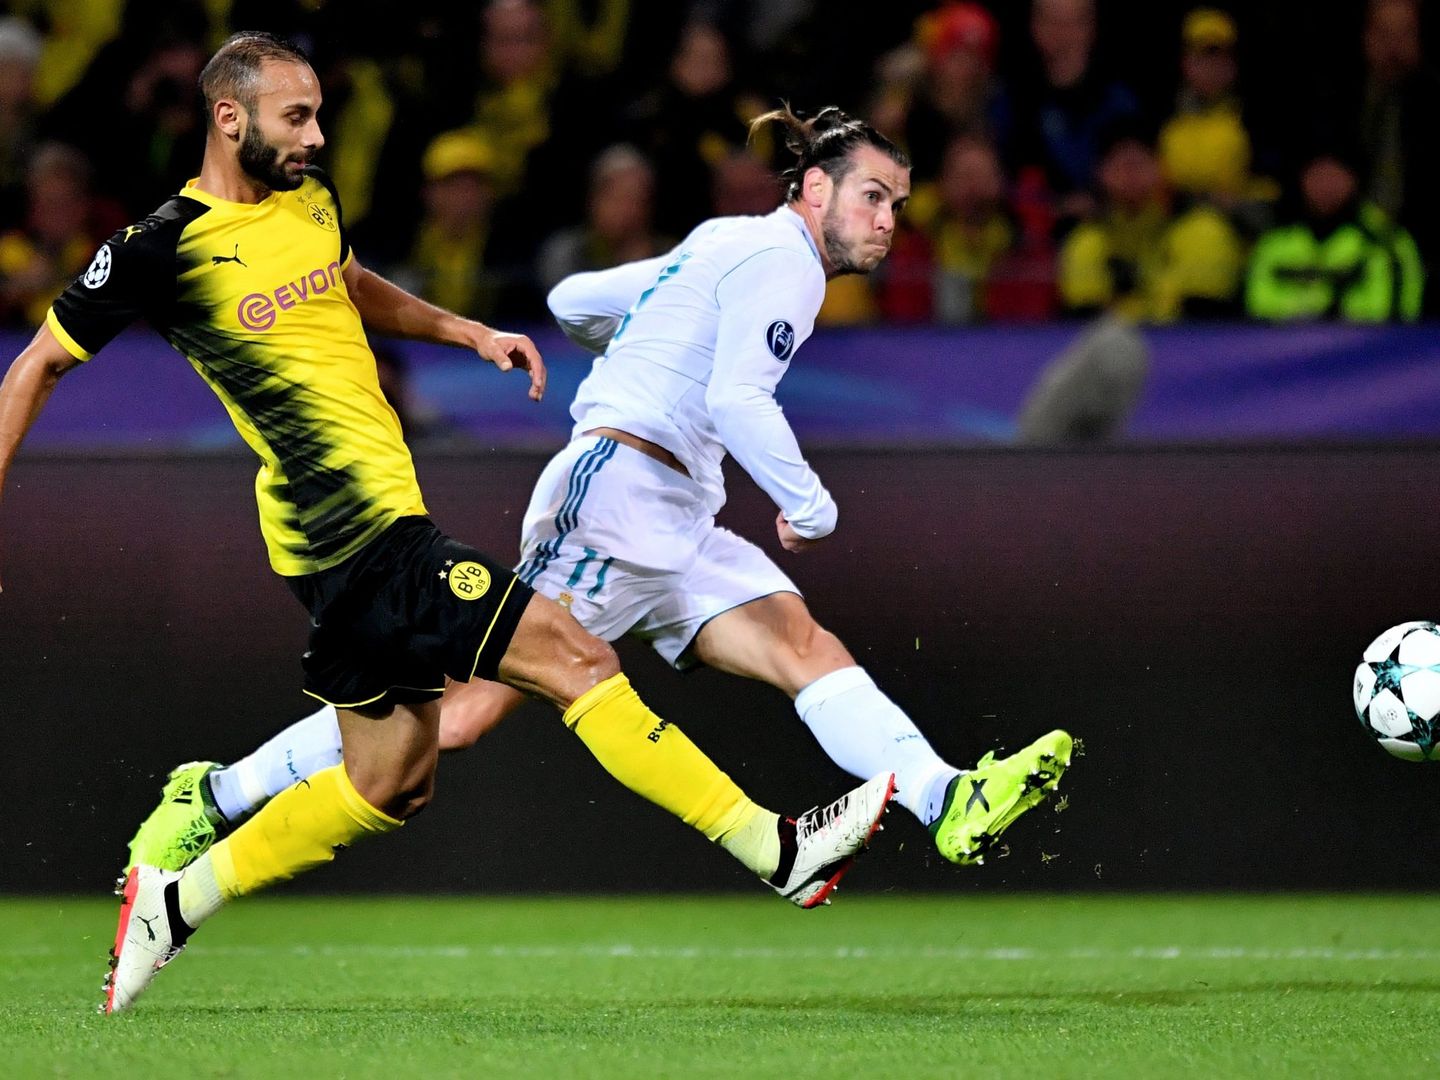 El remate de primeras de Bale al pase en profundidad de Modric será de los mejores goles de la Champions. (EFE)